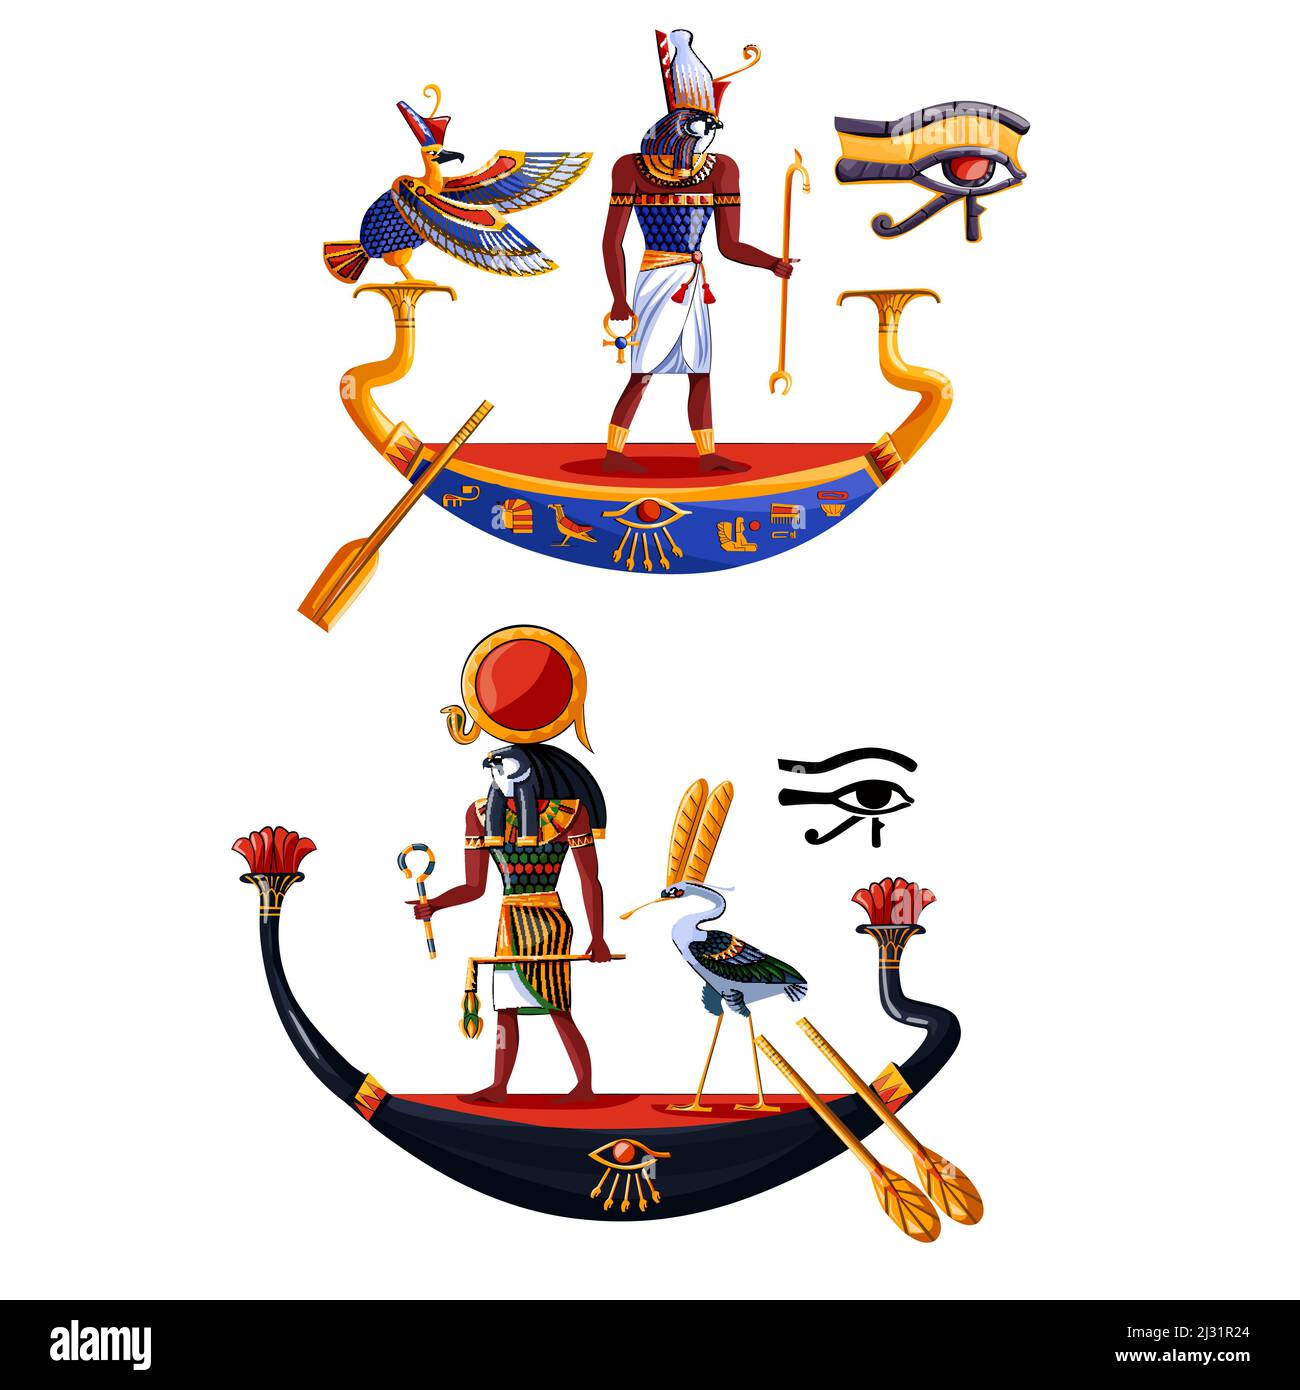 Antico Egitto sole dio Ra o Horus cartoon illustrazione vettoriale. Cultura egiziana simboli religiosi, antico dio-falco in barca di notte e giorno, sacro b Illustrazione Vettoriale